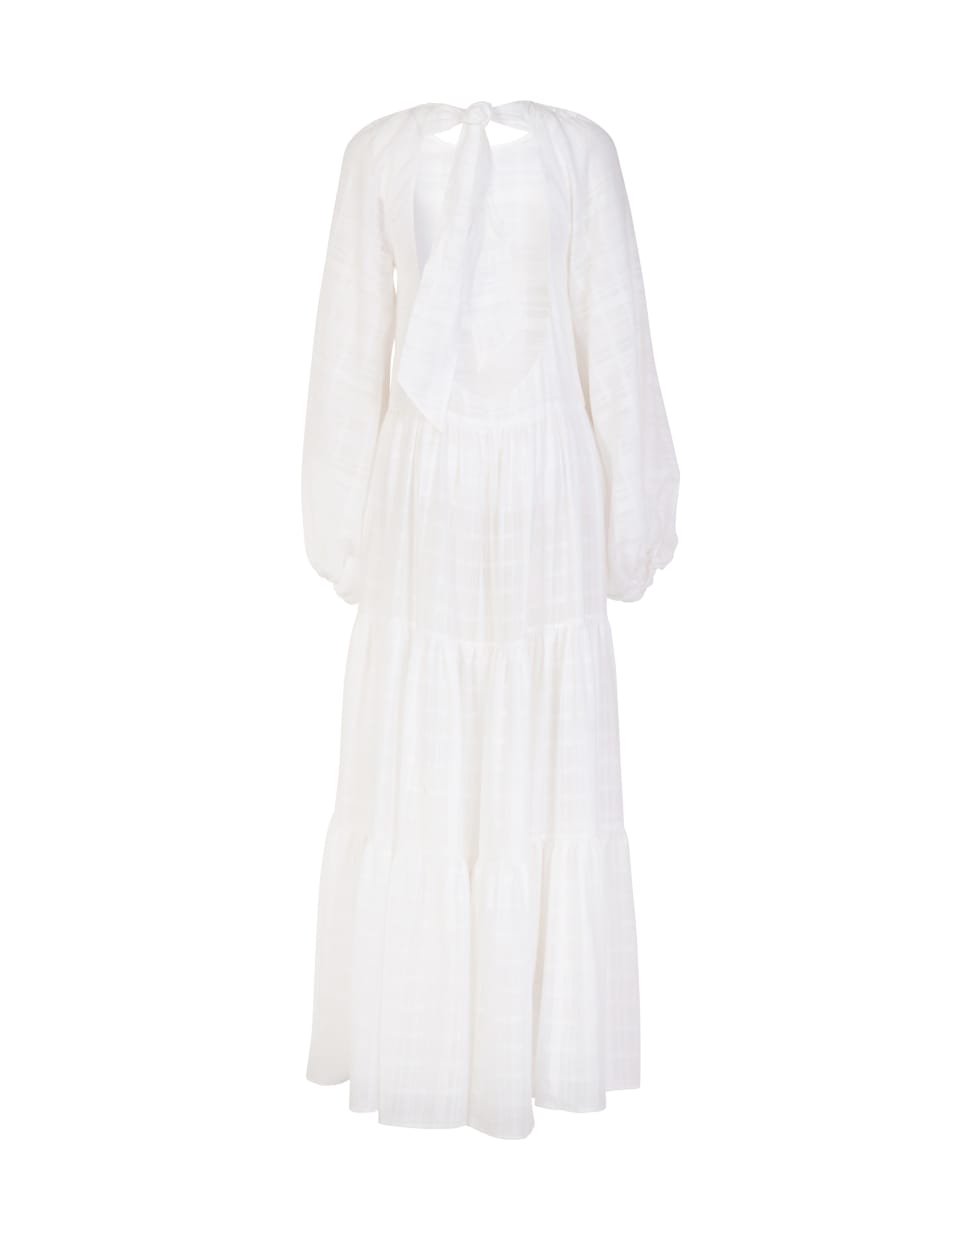 WANDERING Striped Muslin Long Dress - OFF WHITE